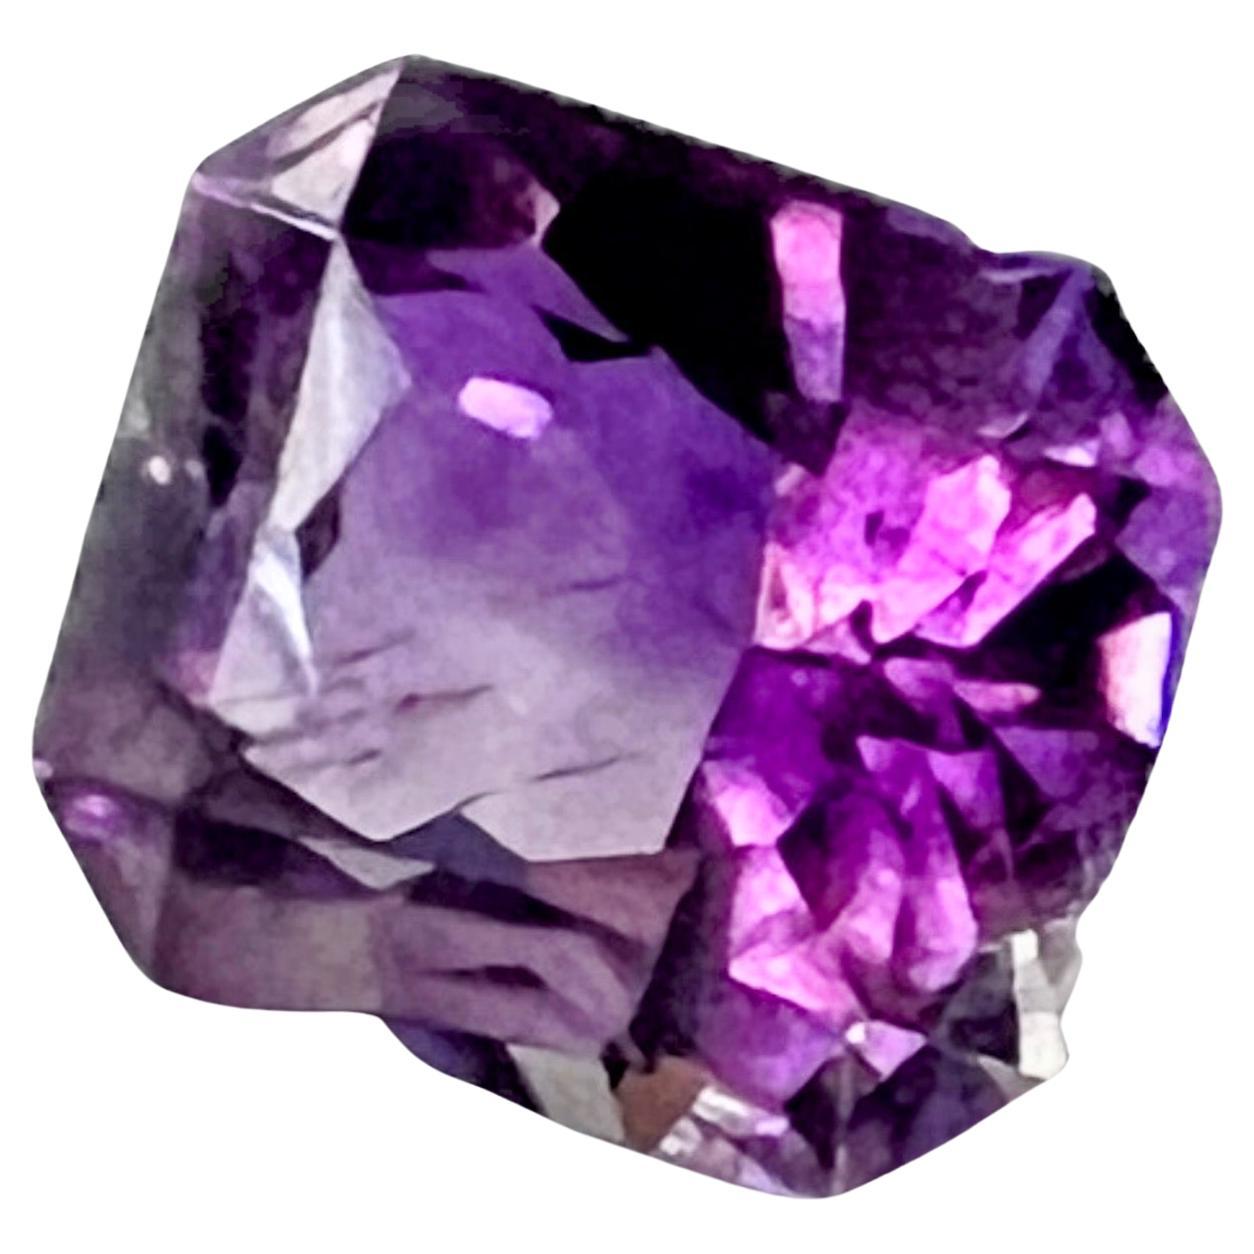 Cette exquise pierre en vrac d'améthyste violette naturelle de 7,17ct, taille princesse, est travaillée à la perfection.
La pierre précieuse présente une taille princesse habilement taillée qui ajoute une touche de perfection à vos